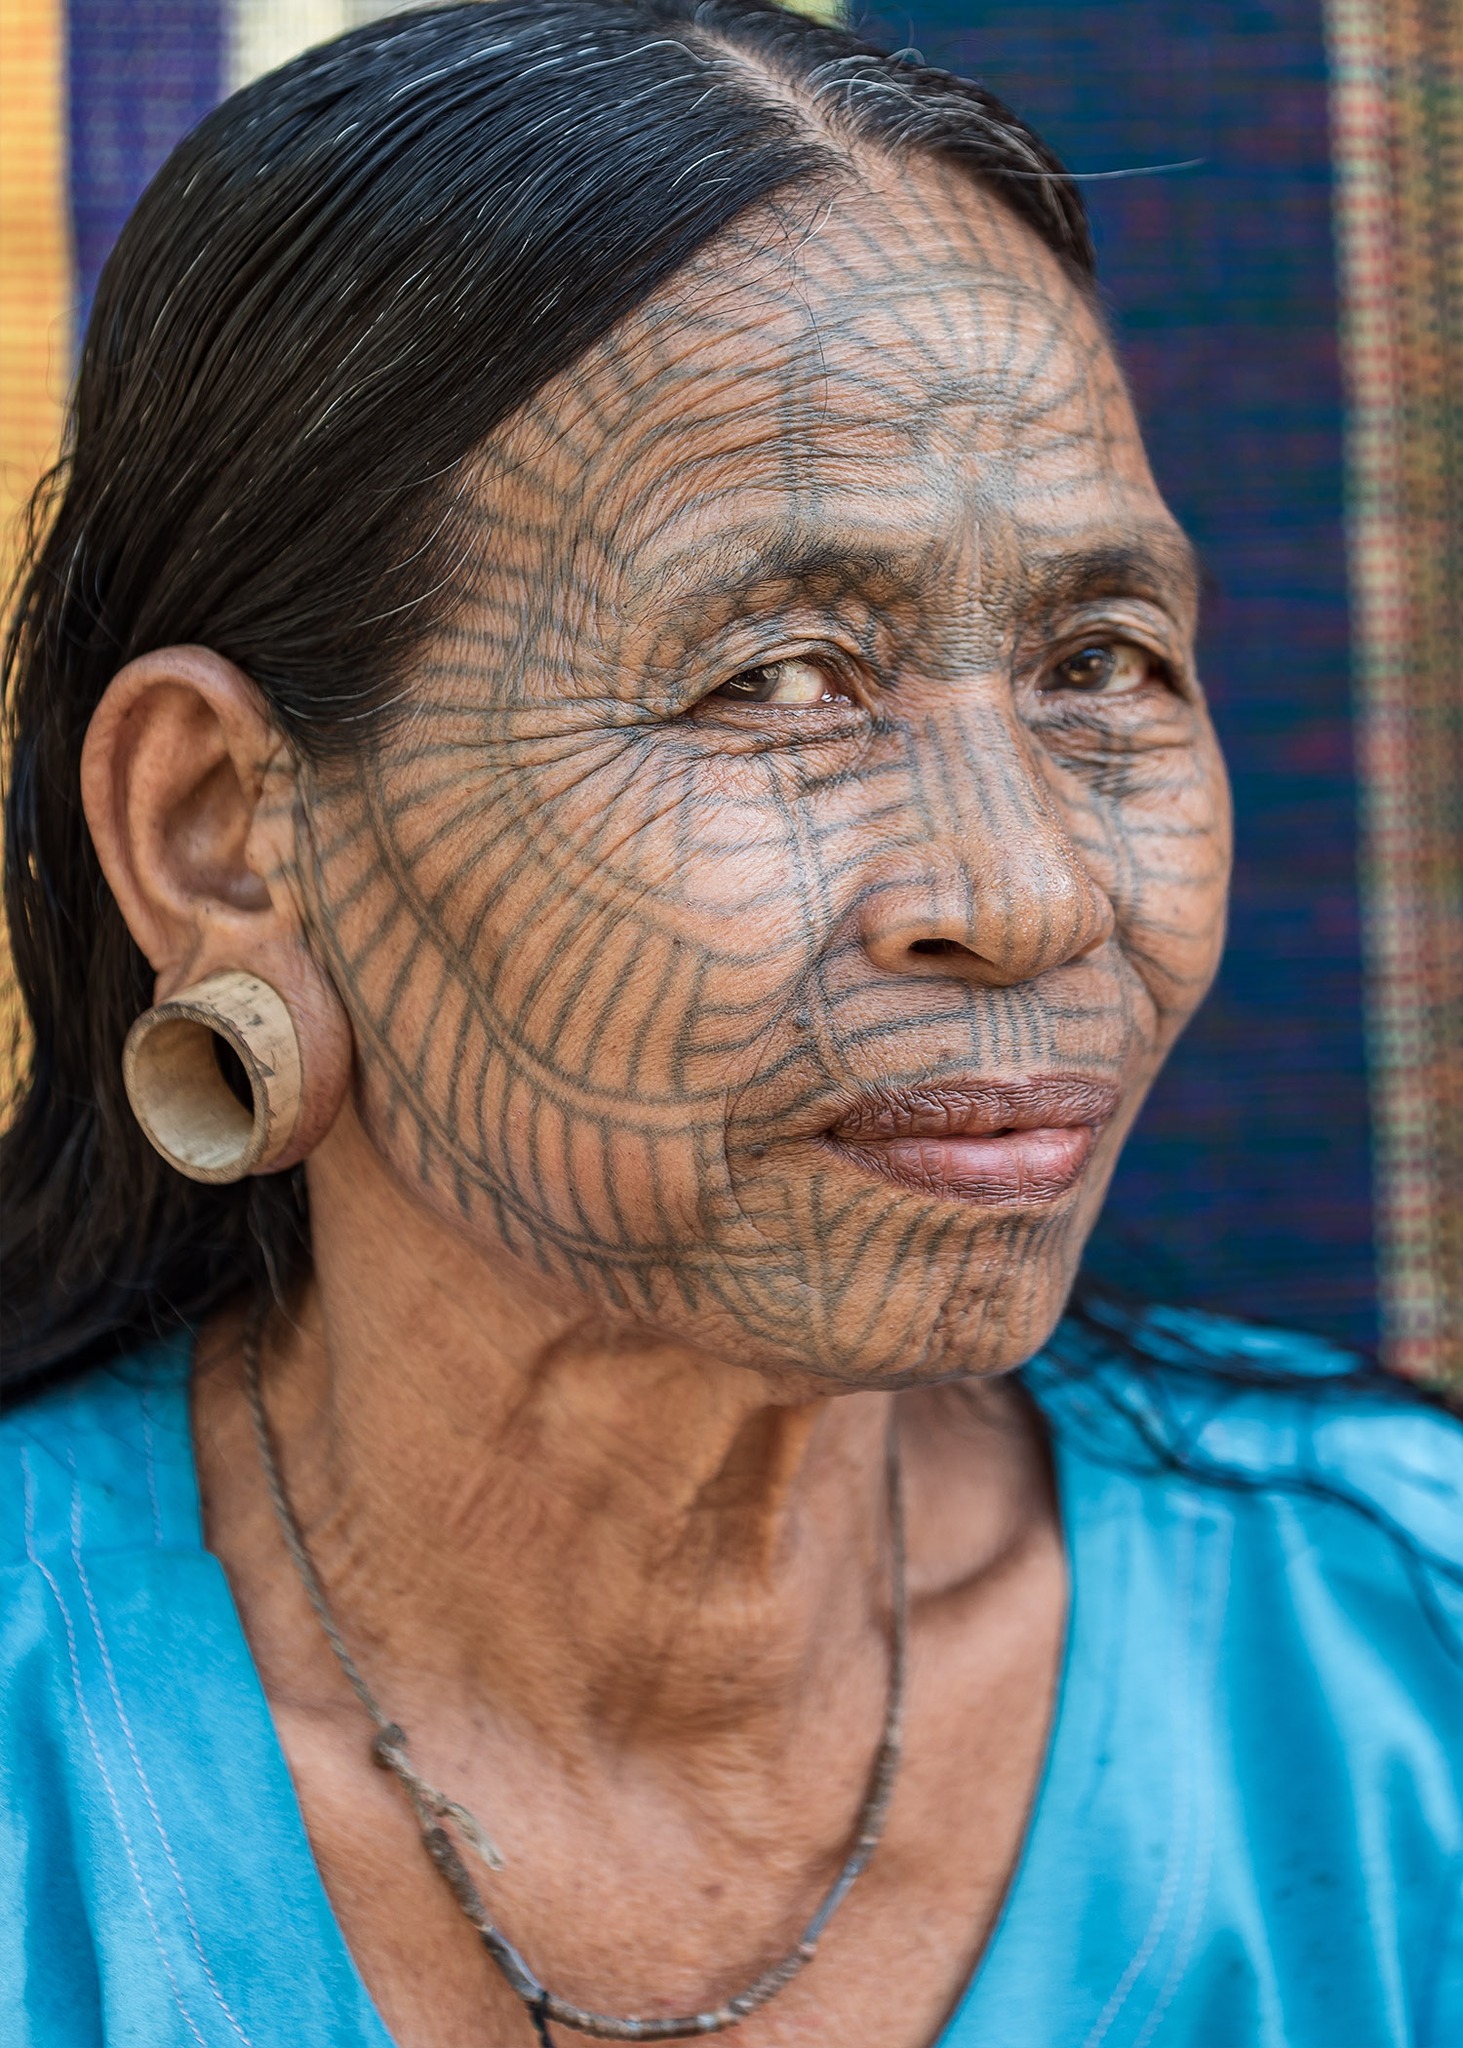 11-Myanmar-People-Ethnic